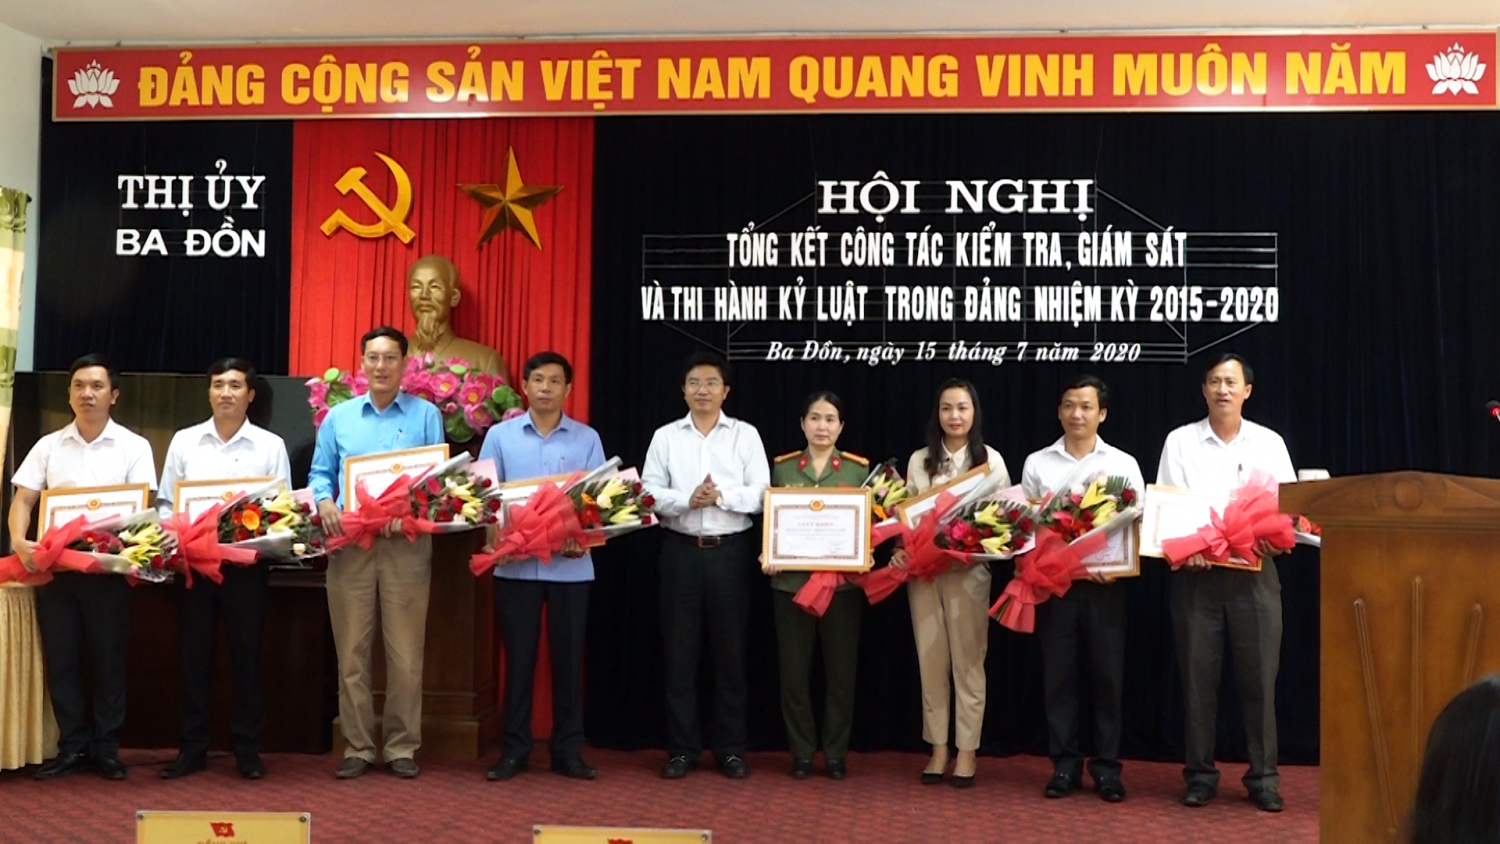 Trương An Ninh UVTV Tỉnh ủy Bí thư Thị ủy Ba Đồn đã trao giấy khen cho 08 tập thể đã có thành tích xuất sắc trong công tác kiểm tra, giám sát, thi hành kỷ luật trong Đảng nhiệm kỳ 2015 – 2020